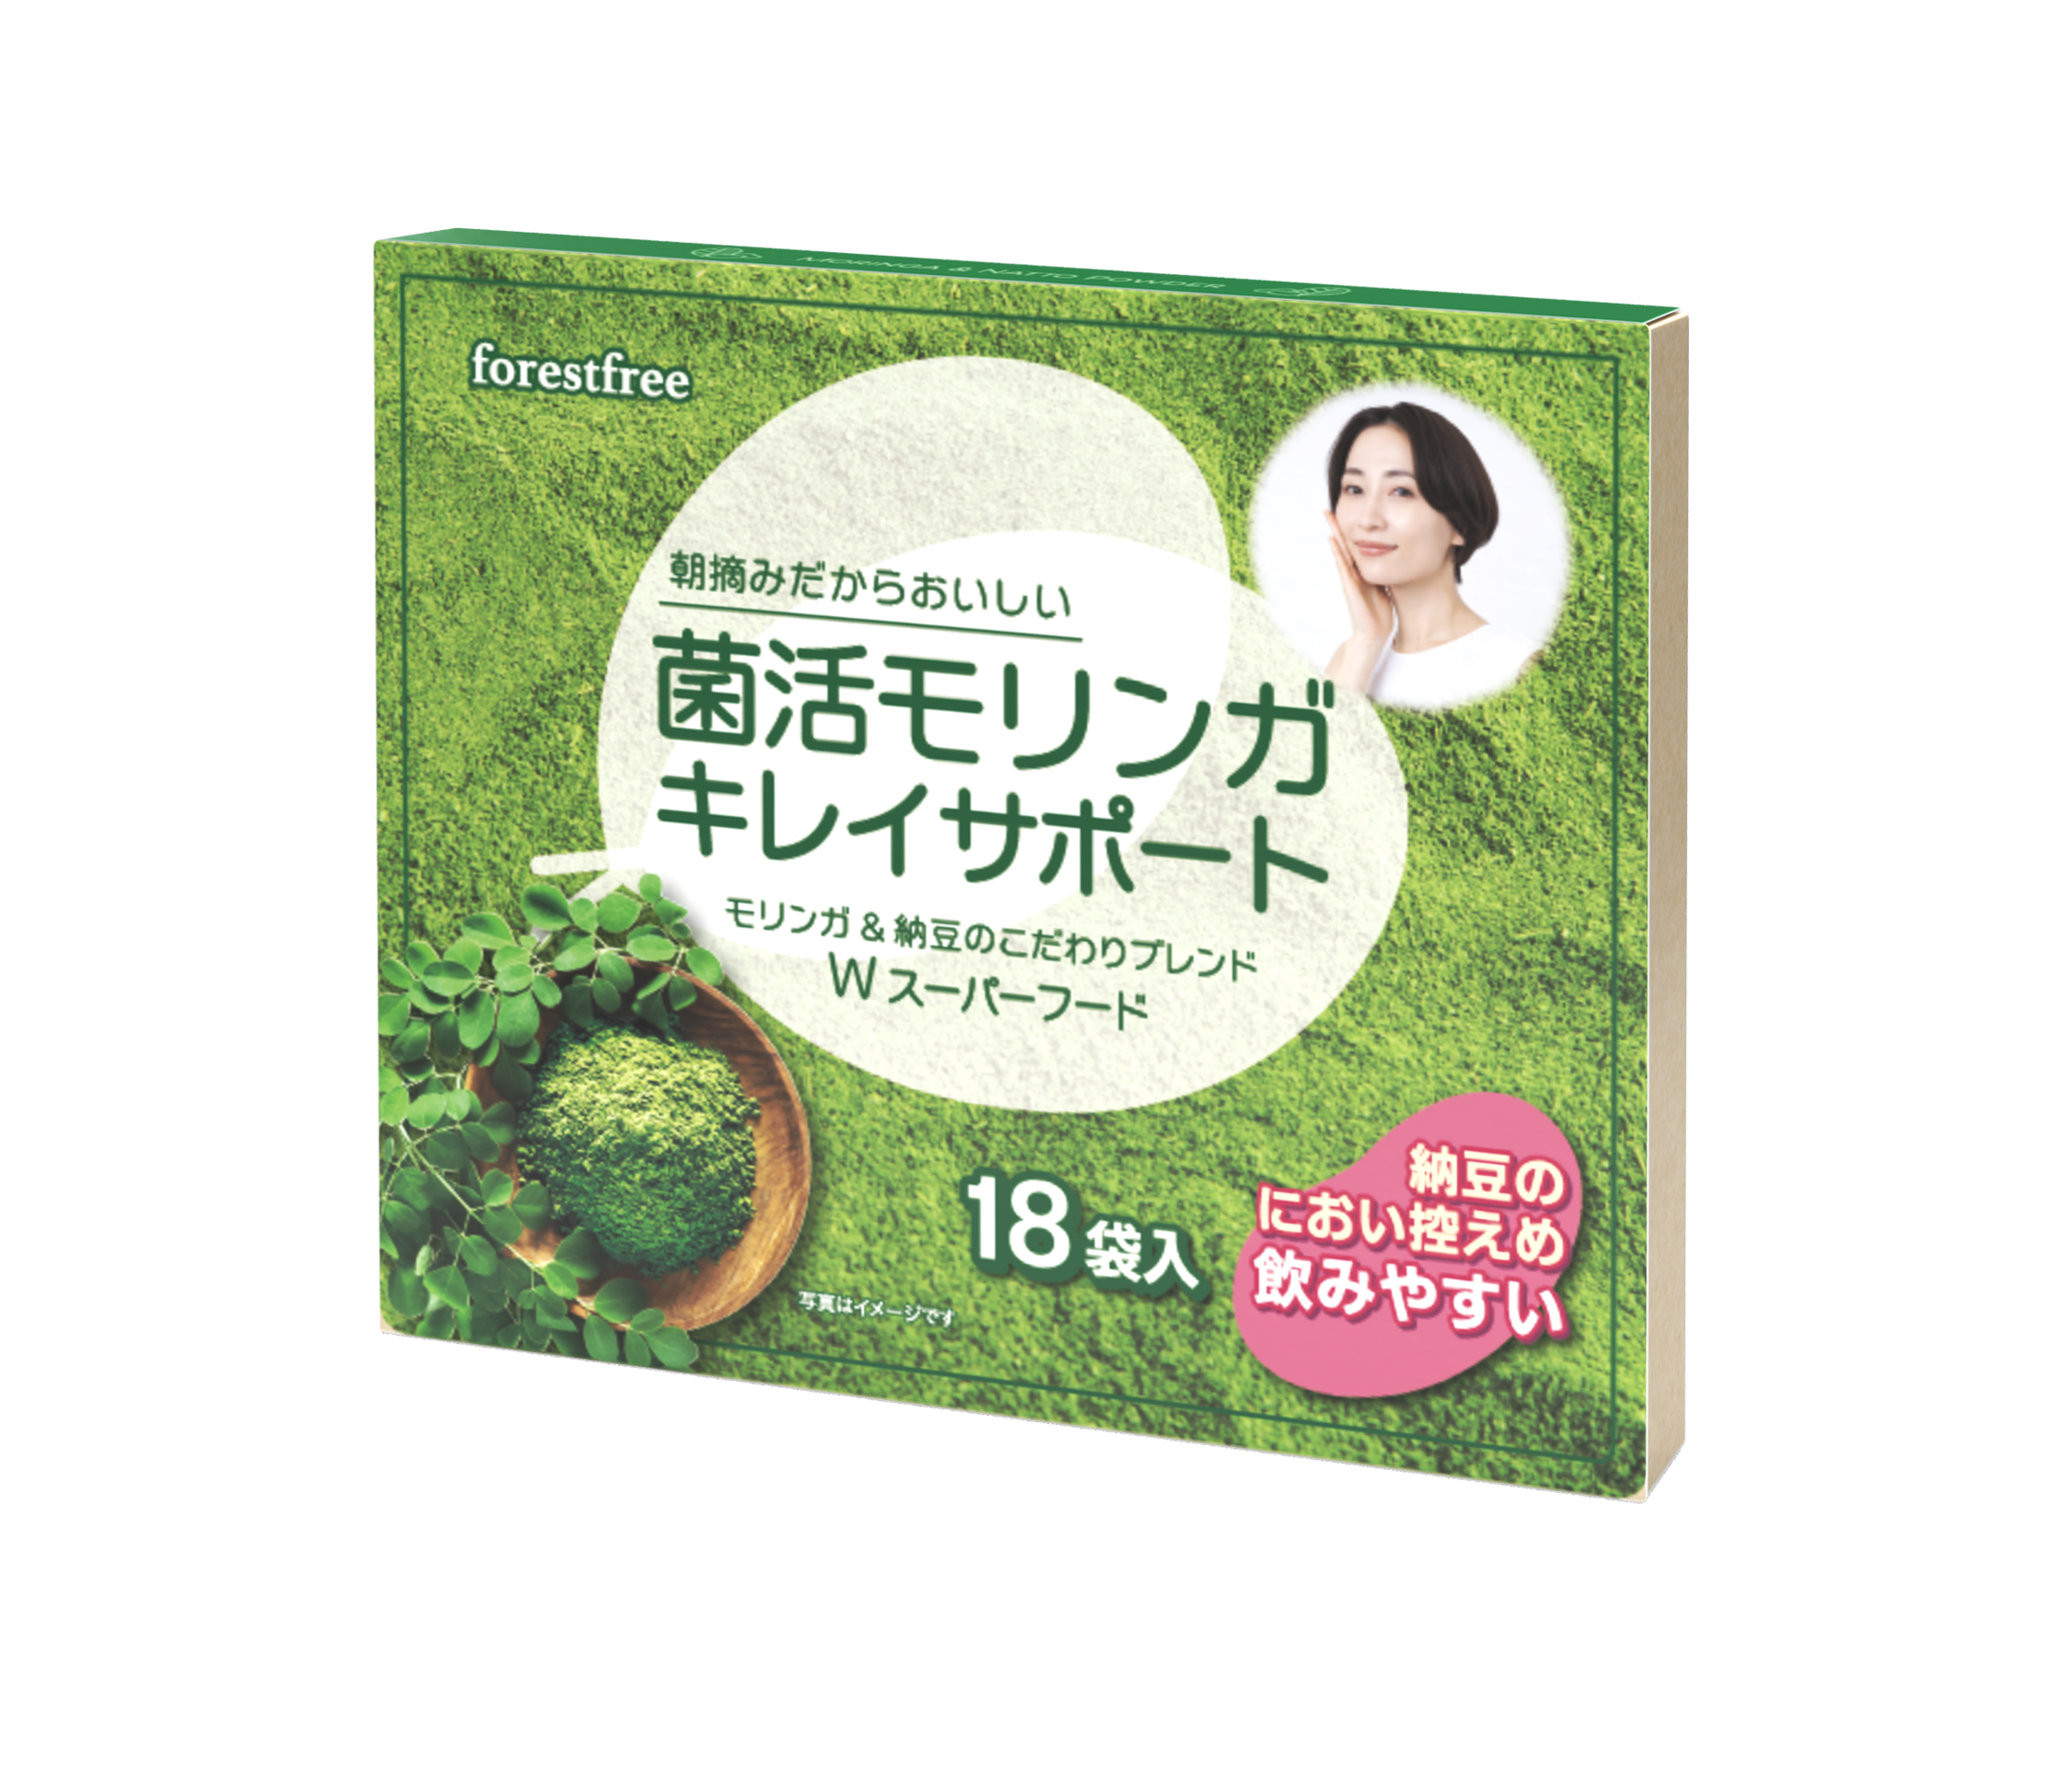 夏の乱れた腸内環境に！「納豆とお茶」が奇跡のコラボ 
新商品「菌活モリンガ キレイサポート」を7月24日に発売